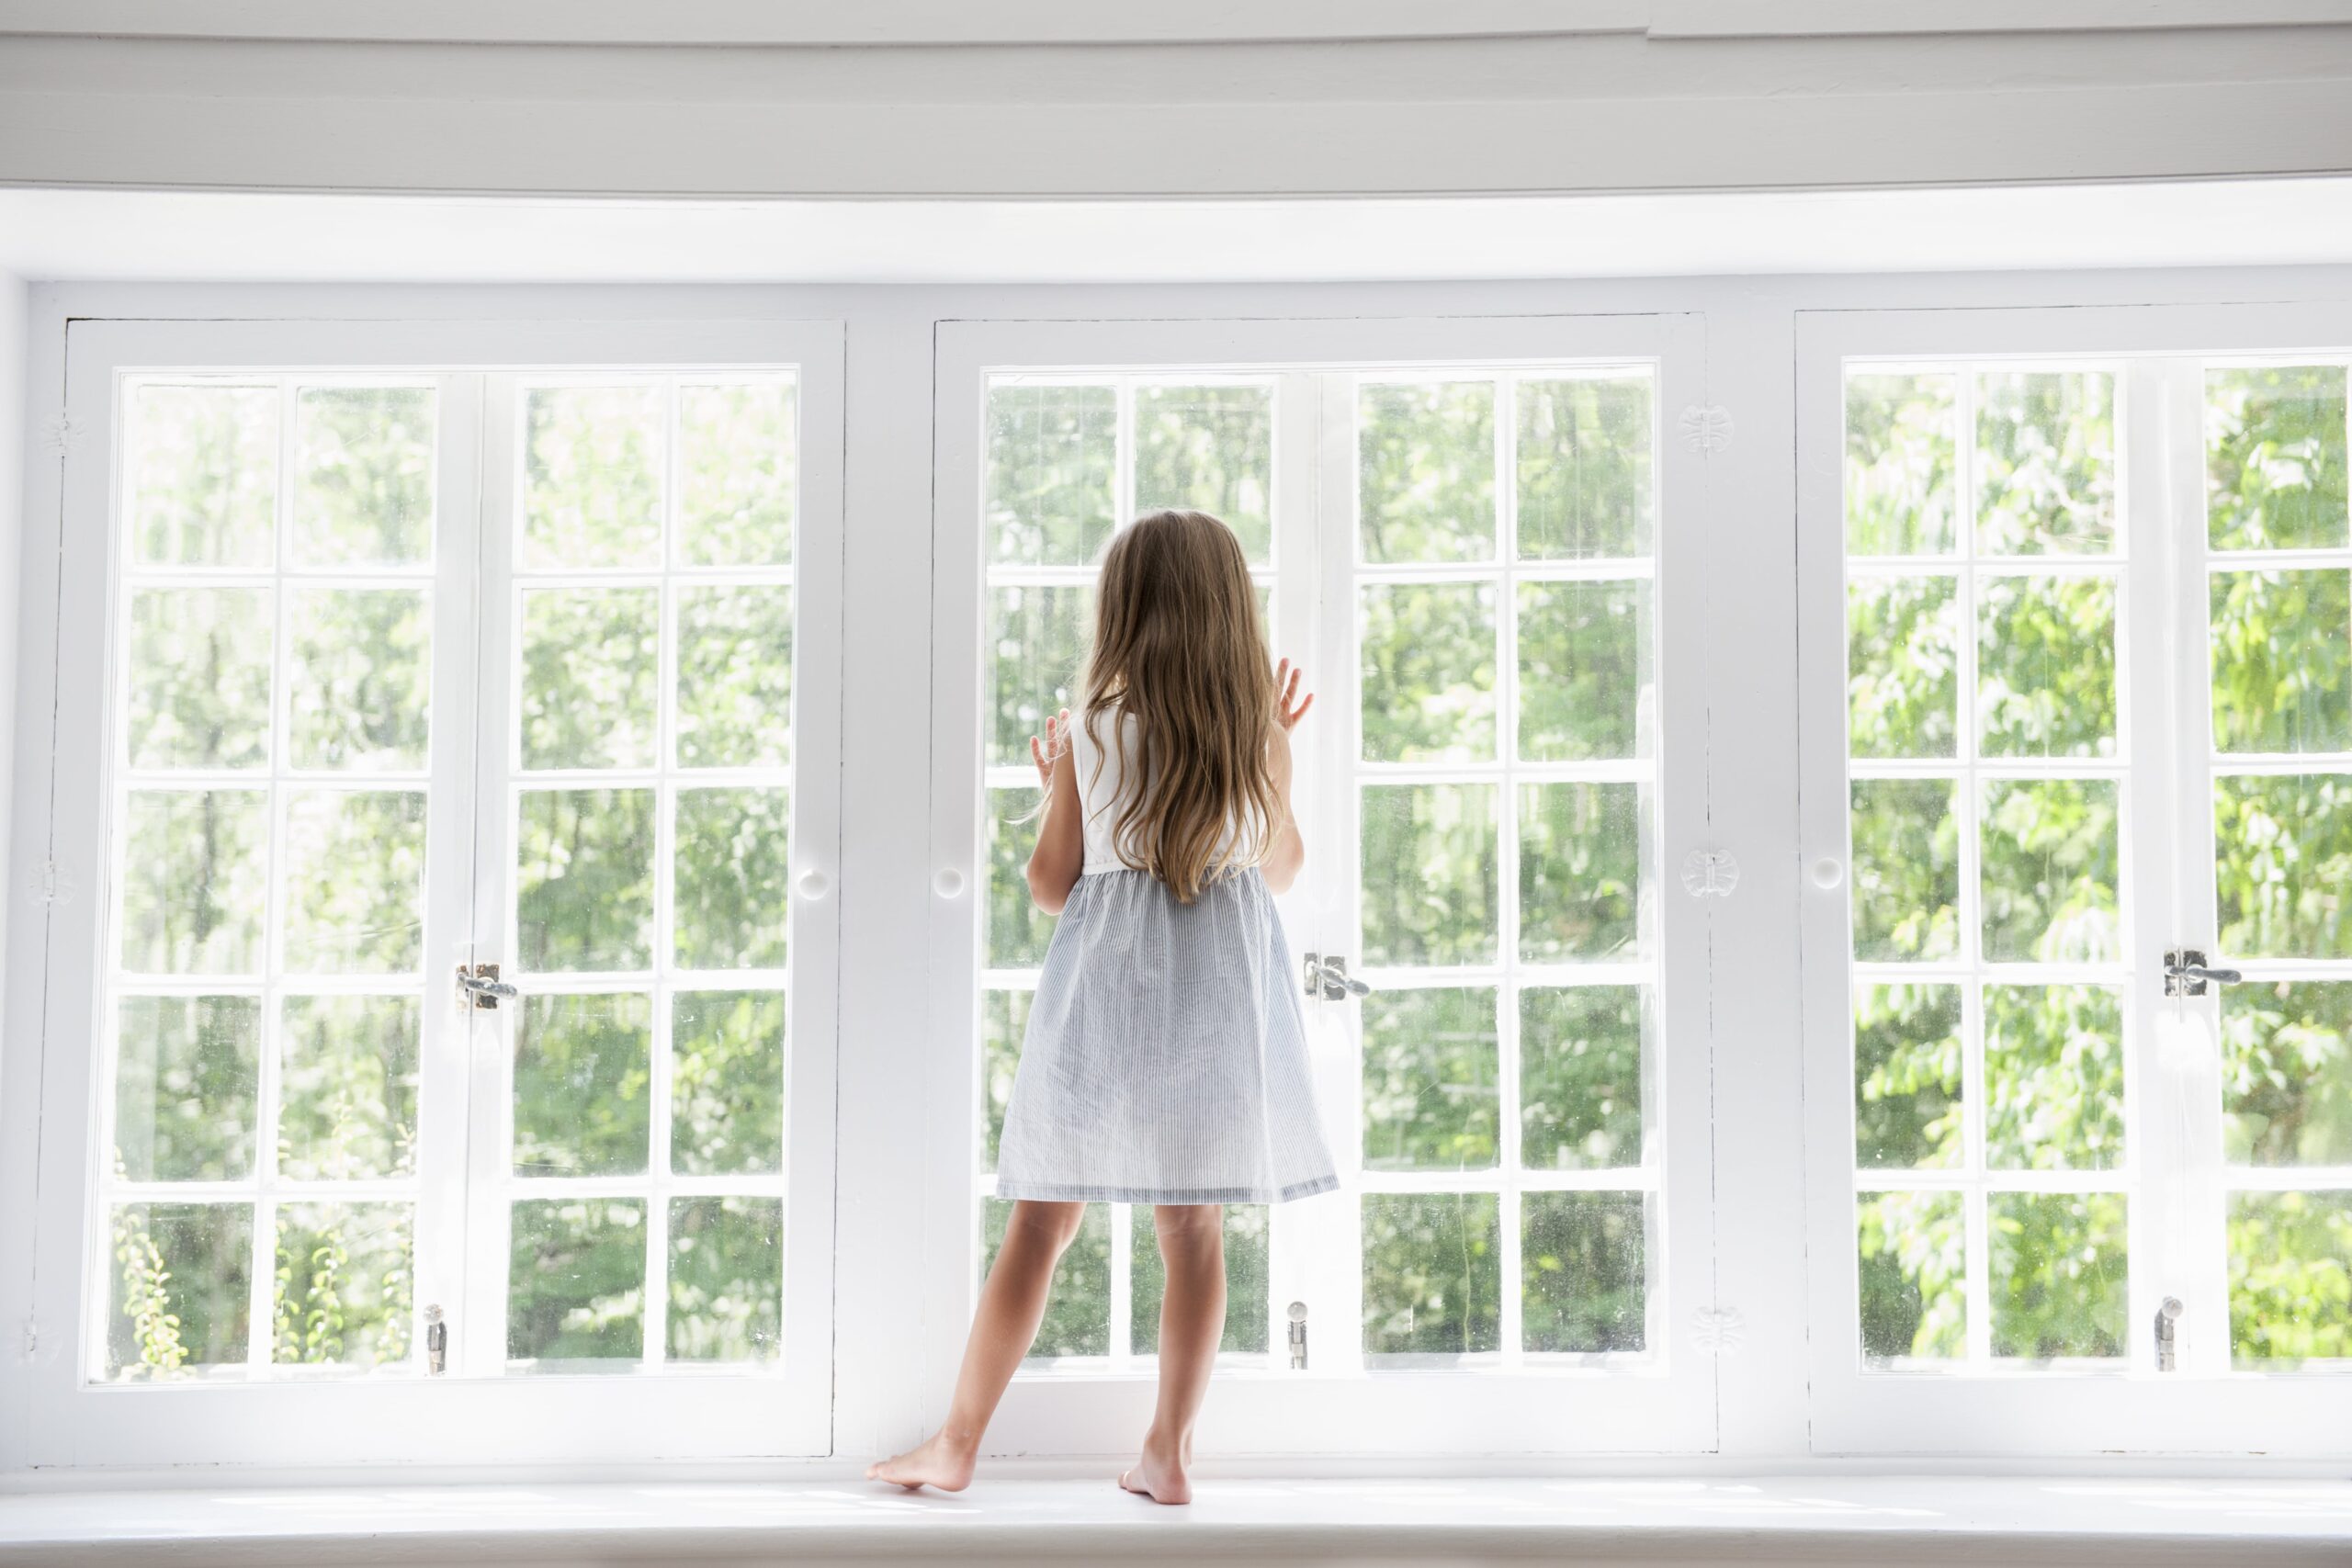 Consejos de seguridad infantil en ventanas - TermProtect - Las ventanas que  protegen tu familia